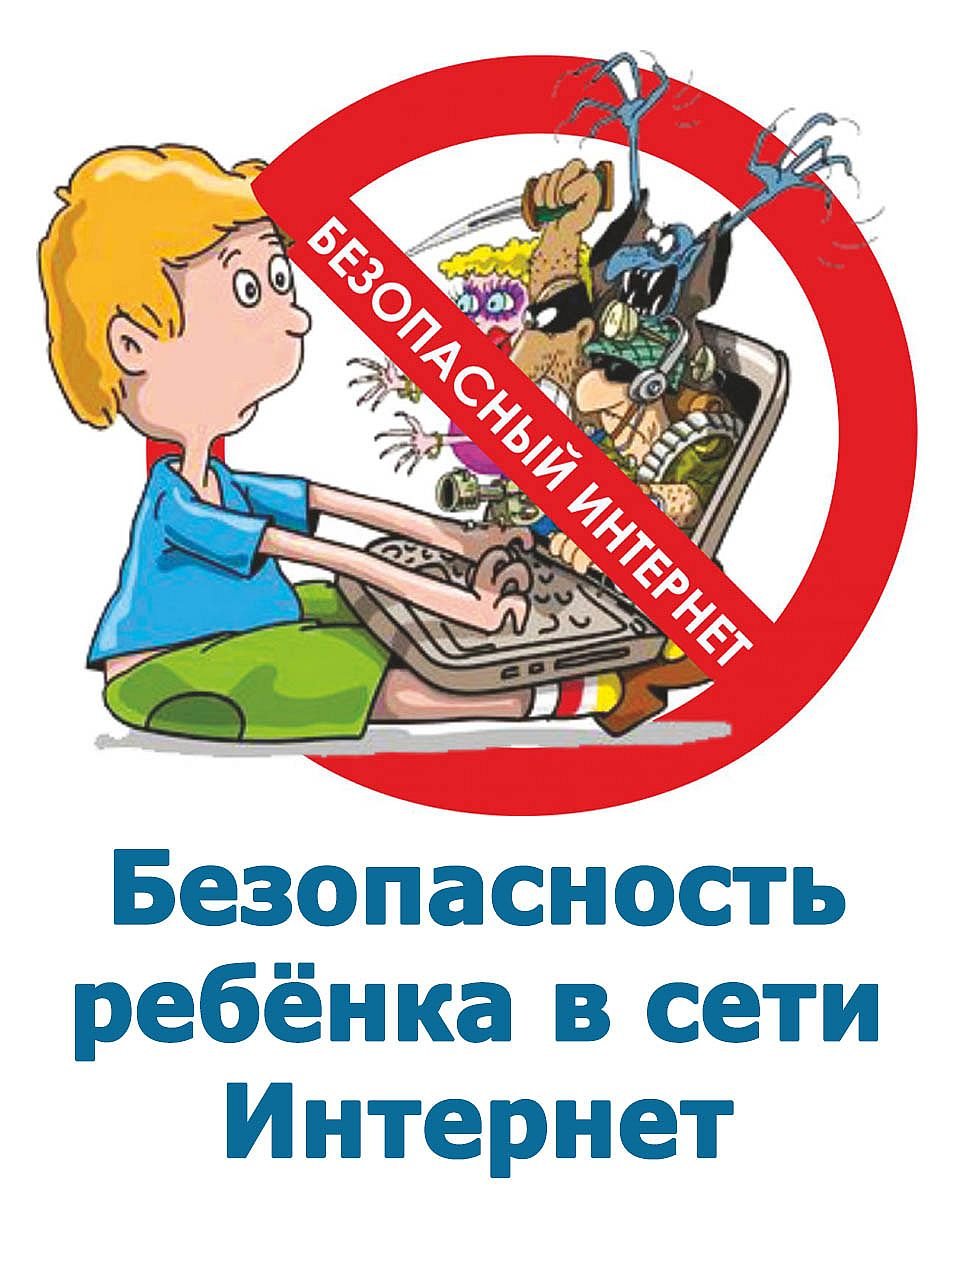 Безопасность детей в интернете иллюстрации